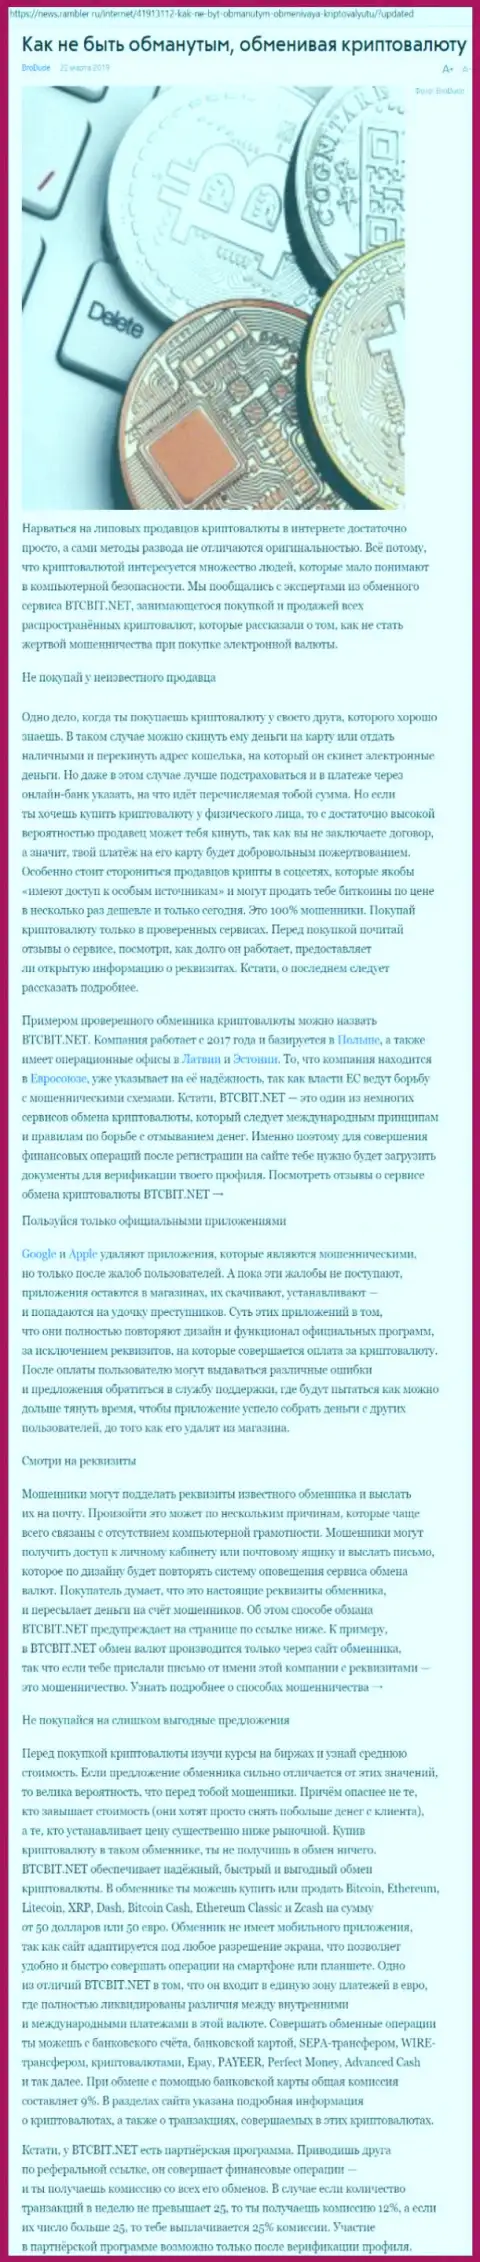 Статья о БТЦБИТ Сп. з.о.о. на news rambler ru